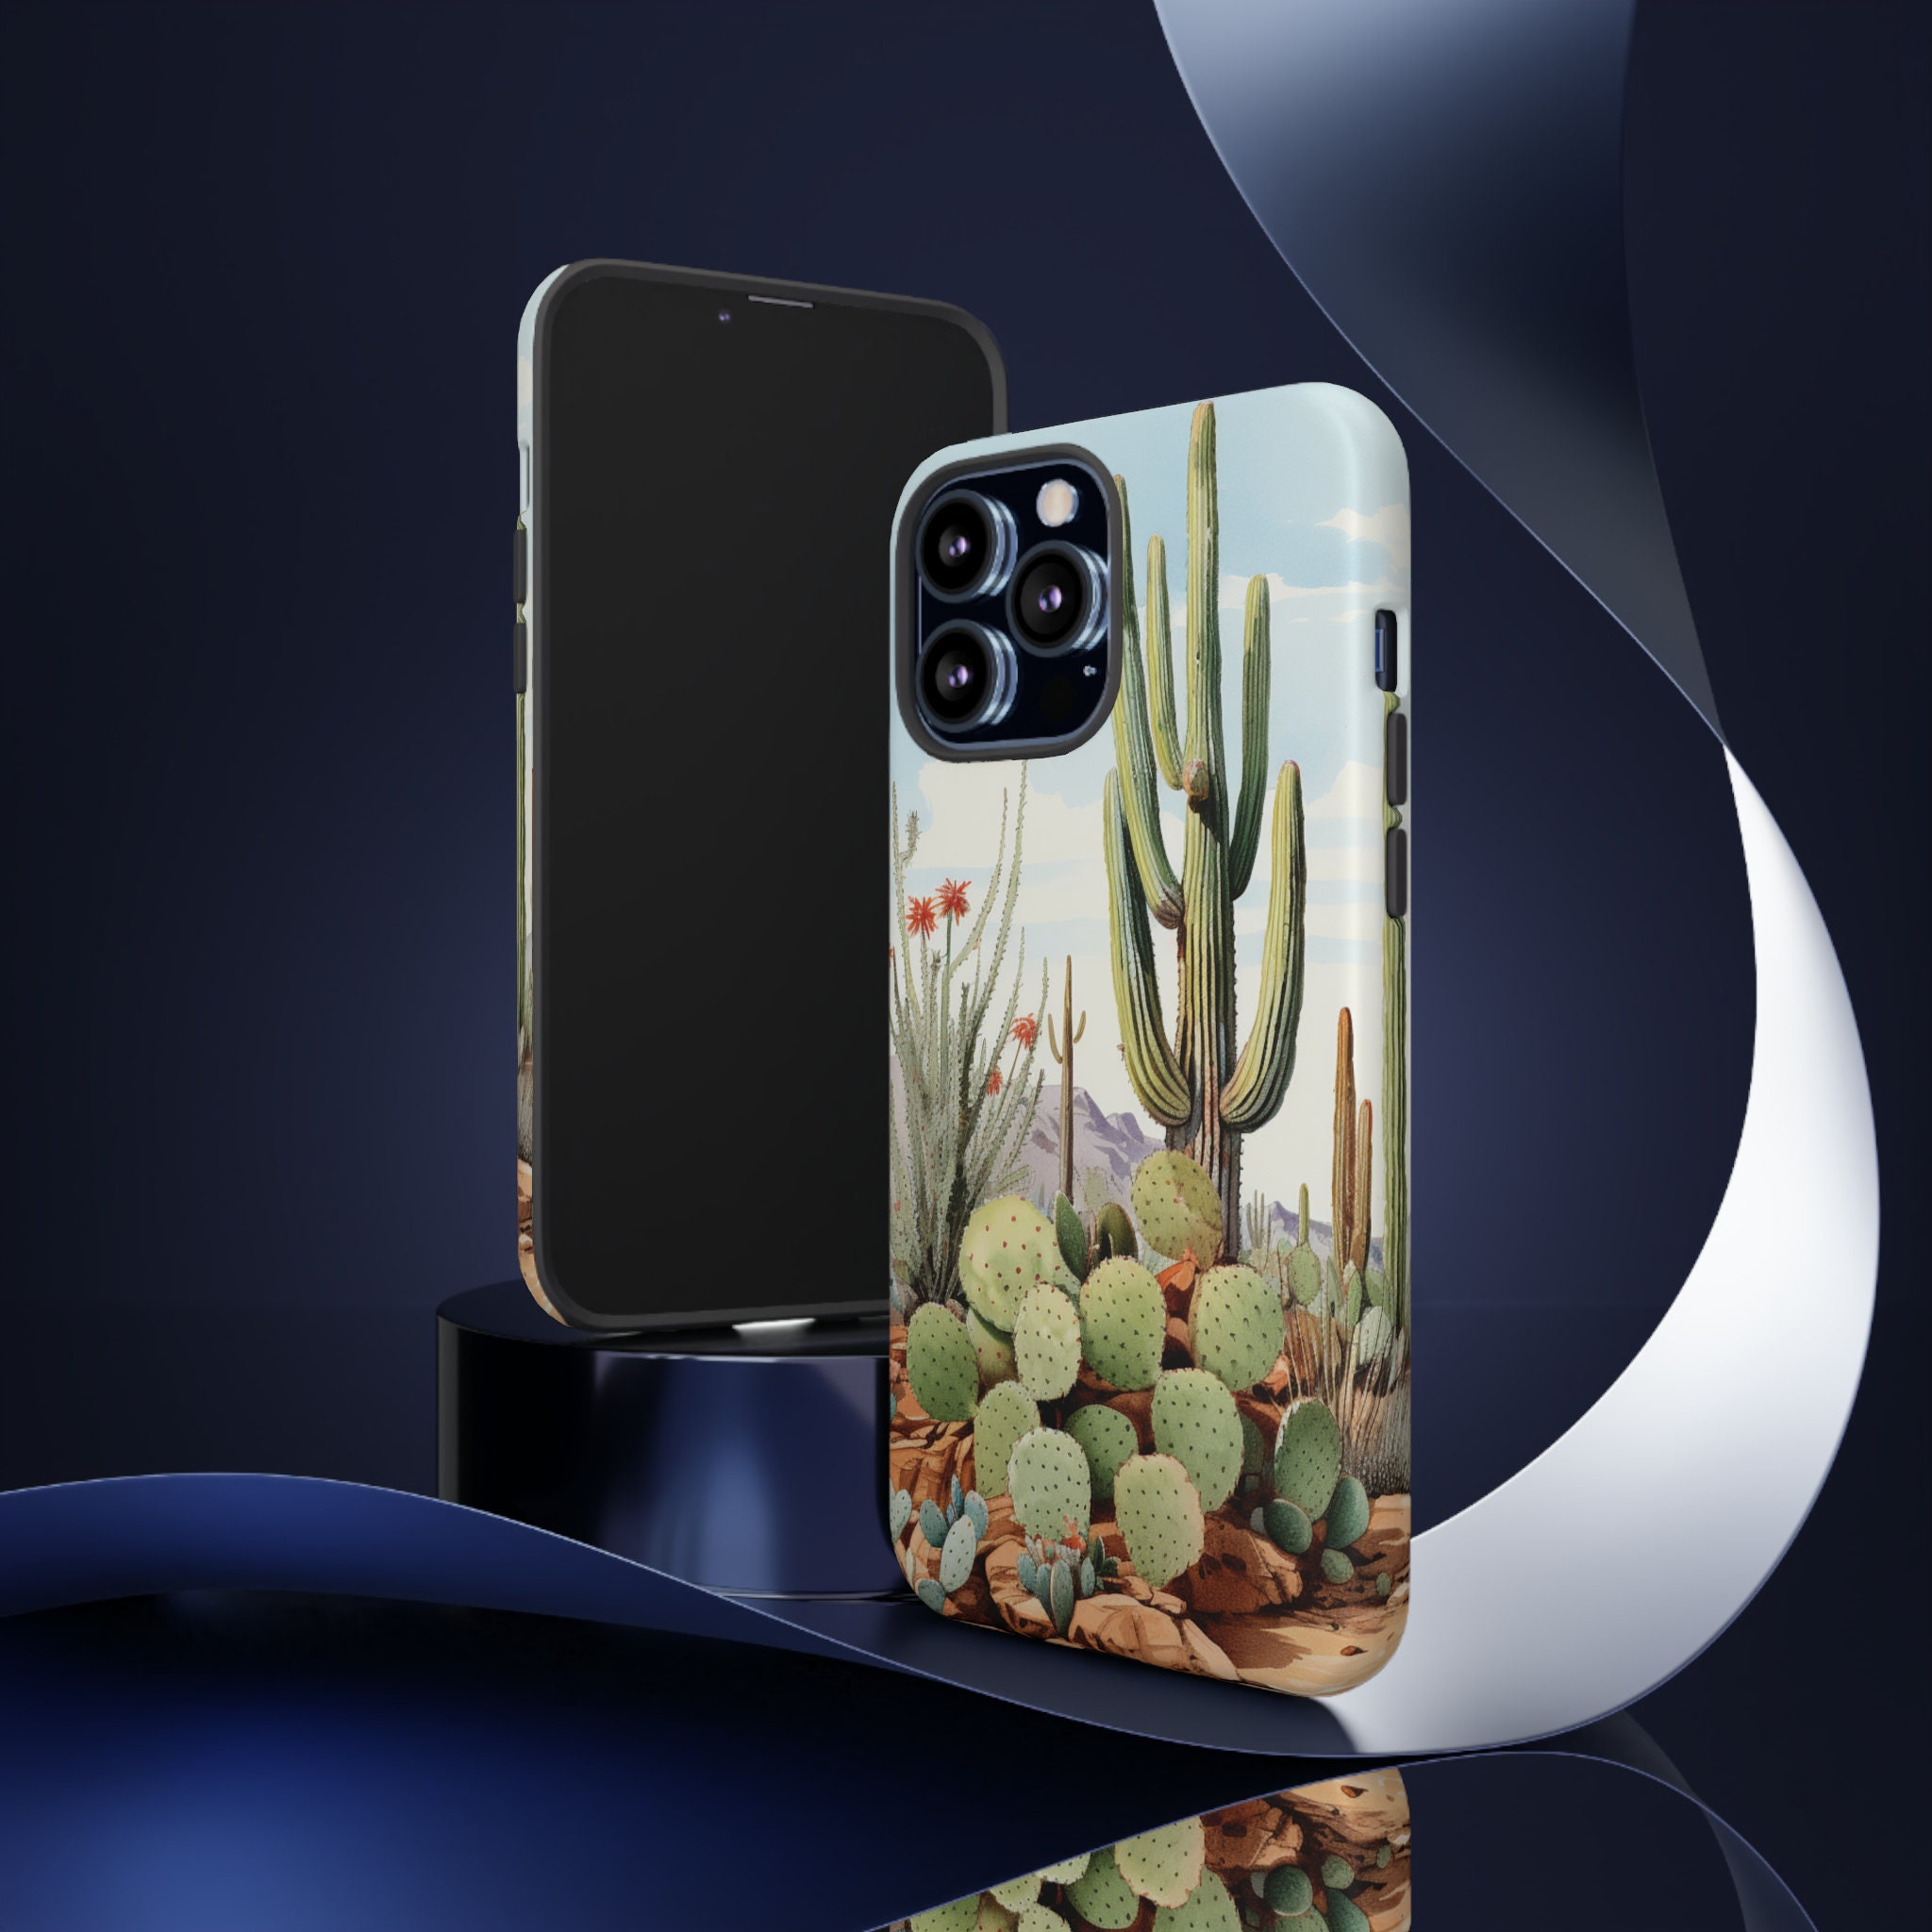 Cactus Phone Case - Etsy